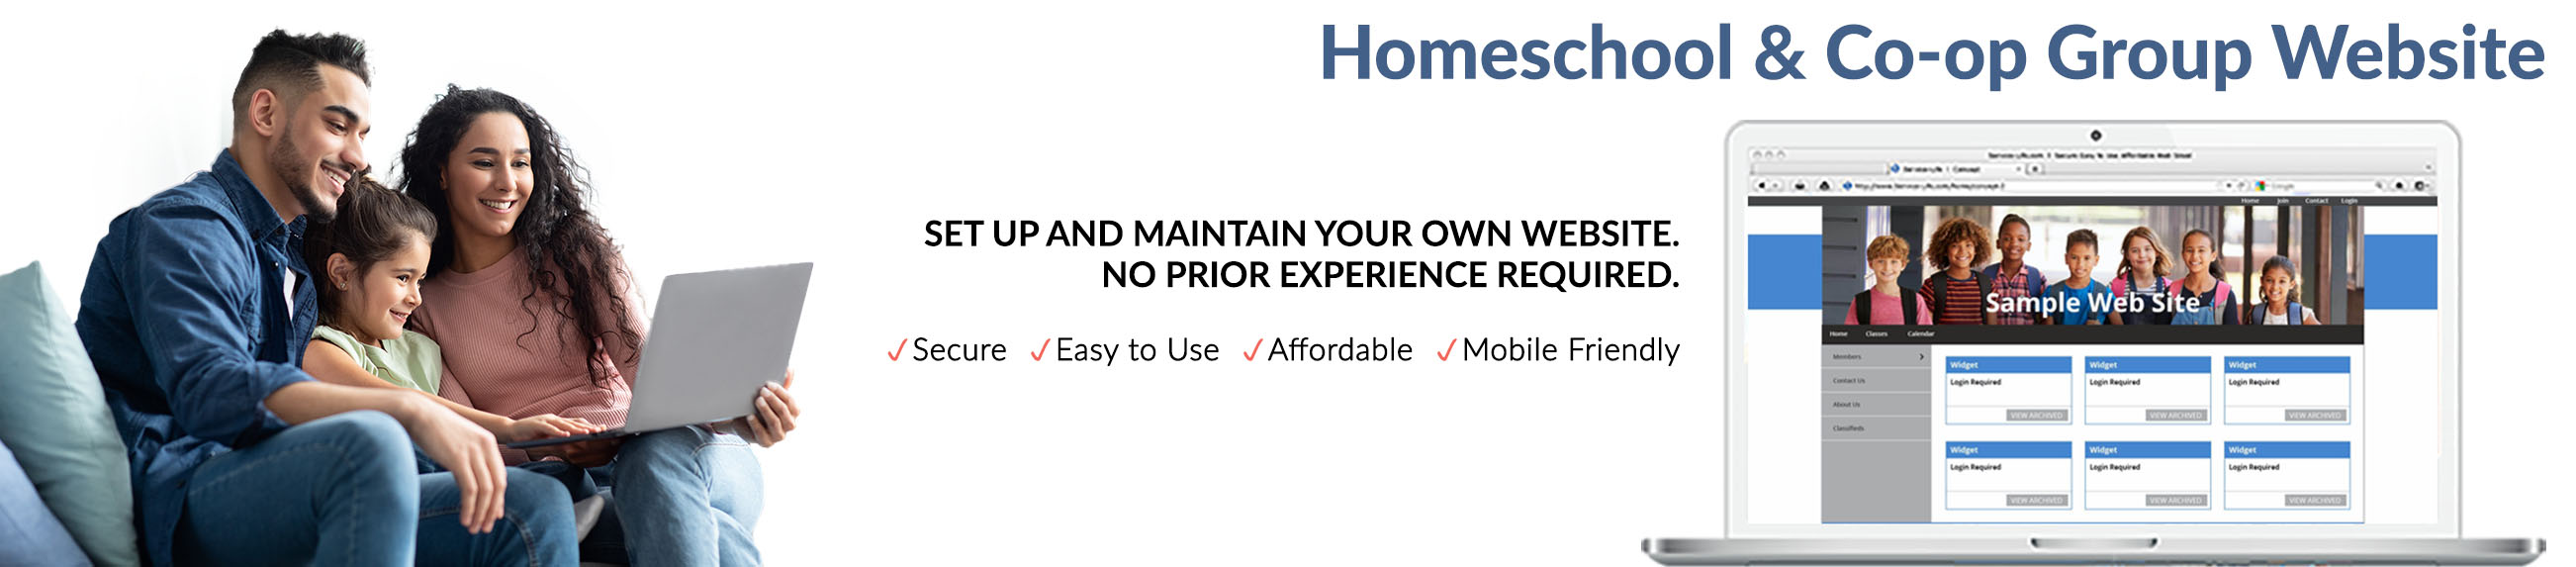 Homeschool Group and Co-op Websites ... - Homeschool-Life.com